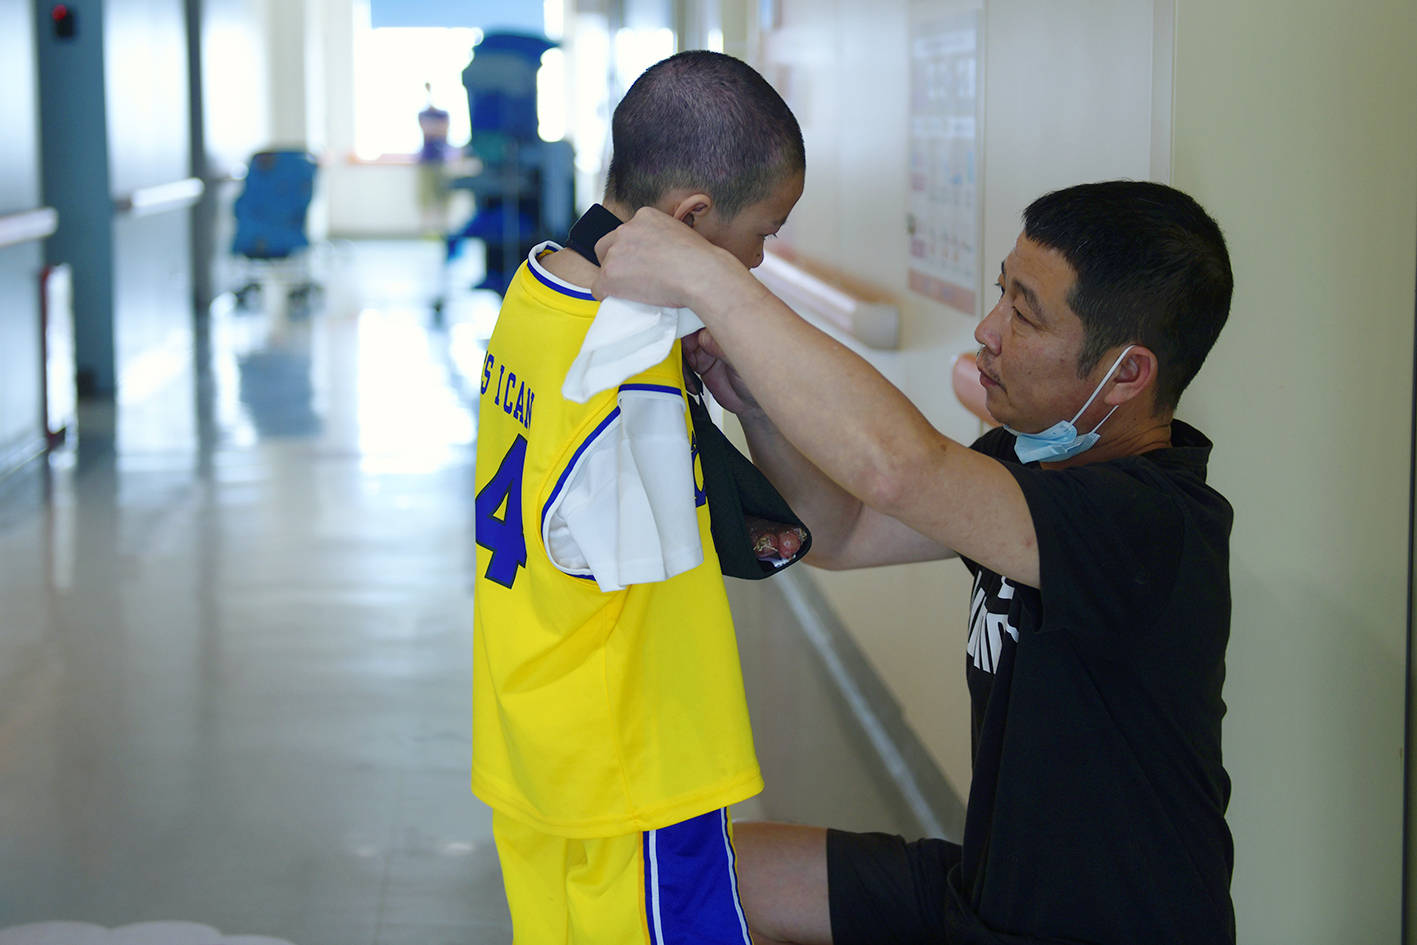 被电击导致截肢的7岁男孩出院想跟哥哥一起去打篮球